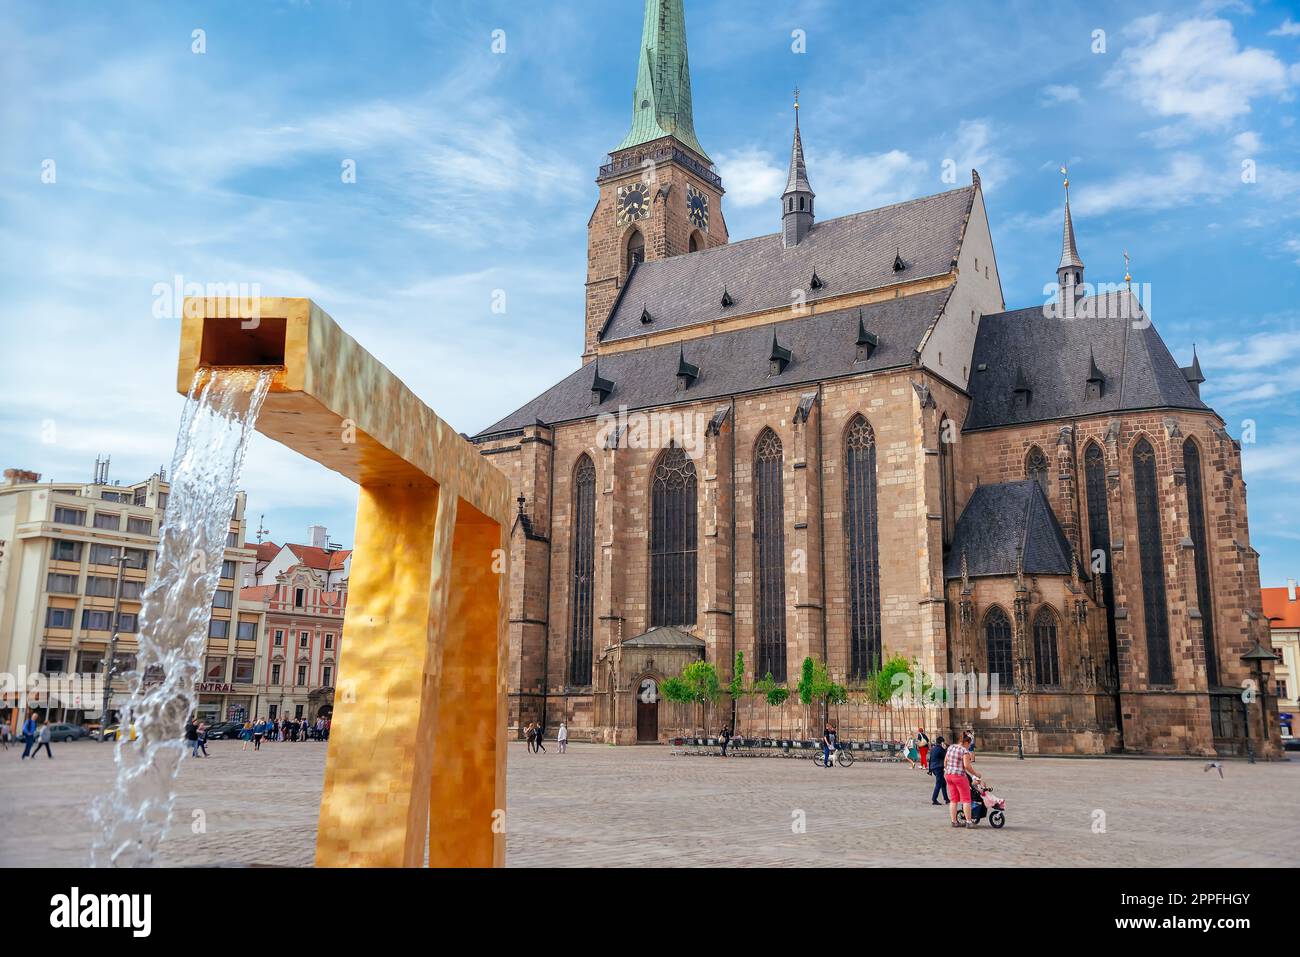 Plzen (Pilsen), Repubblica Ceca - 05 maggio 2022: Cattedrale di San Bartolomeo nella piazza principale di Plzen con una fontana in primo piano Foto Stock